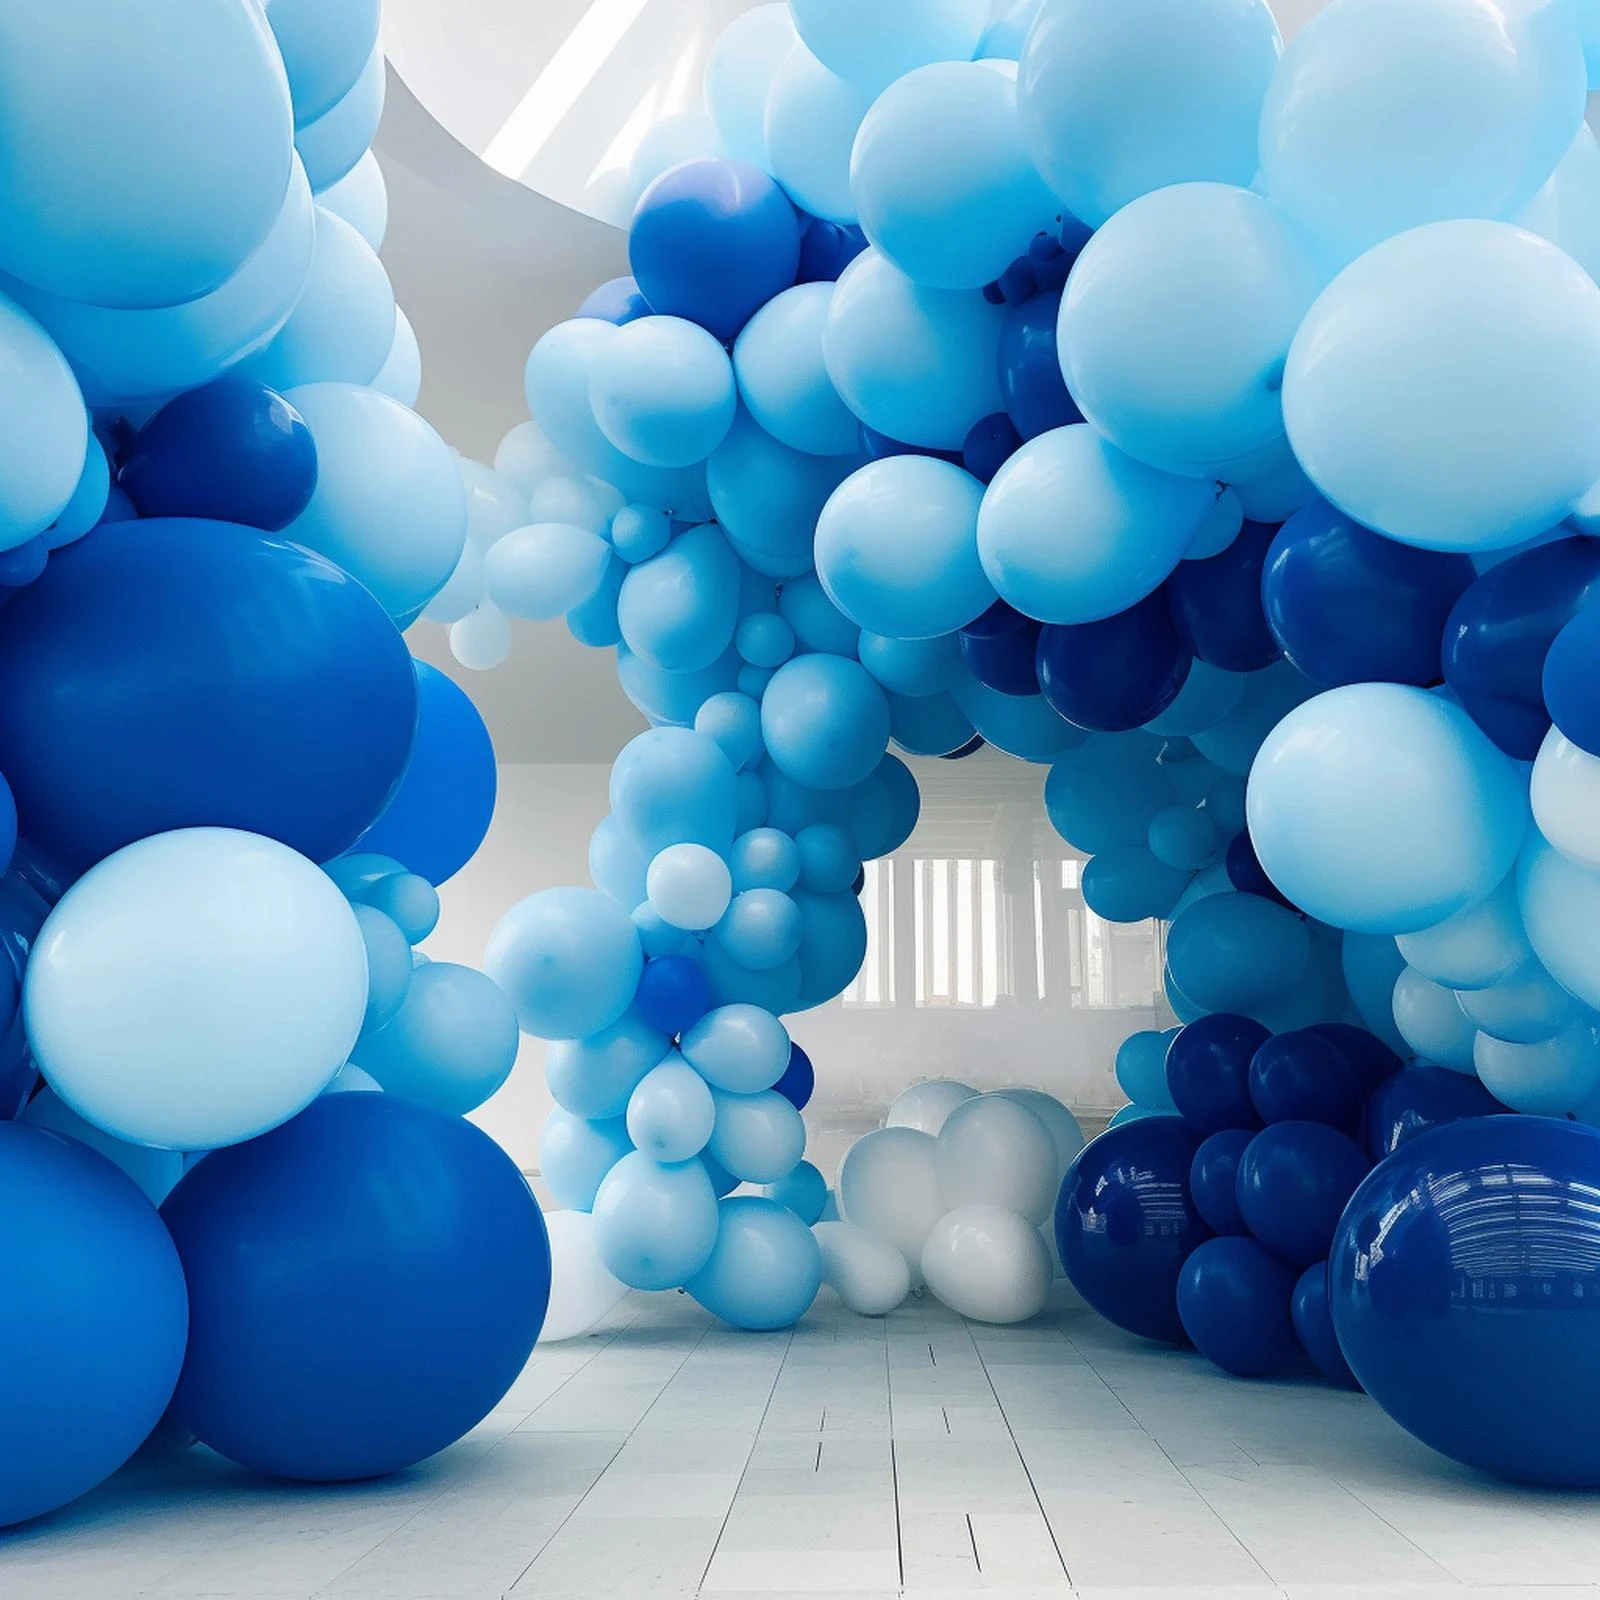 132 шт. компл. Синяя алюминиевая фольга длиной 32,8 фута для стримеров на День рождения, украшений для вечеринок, подвесных шаров из латекса.